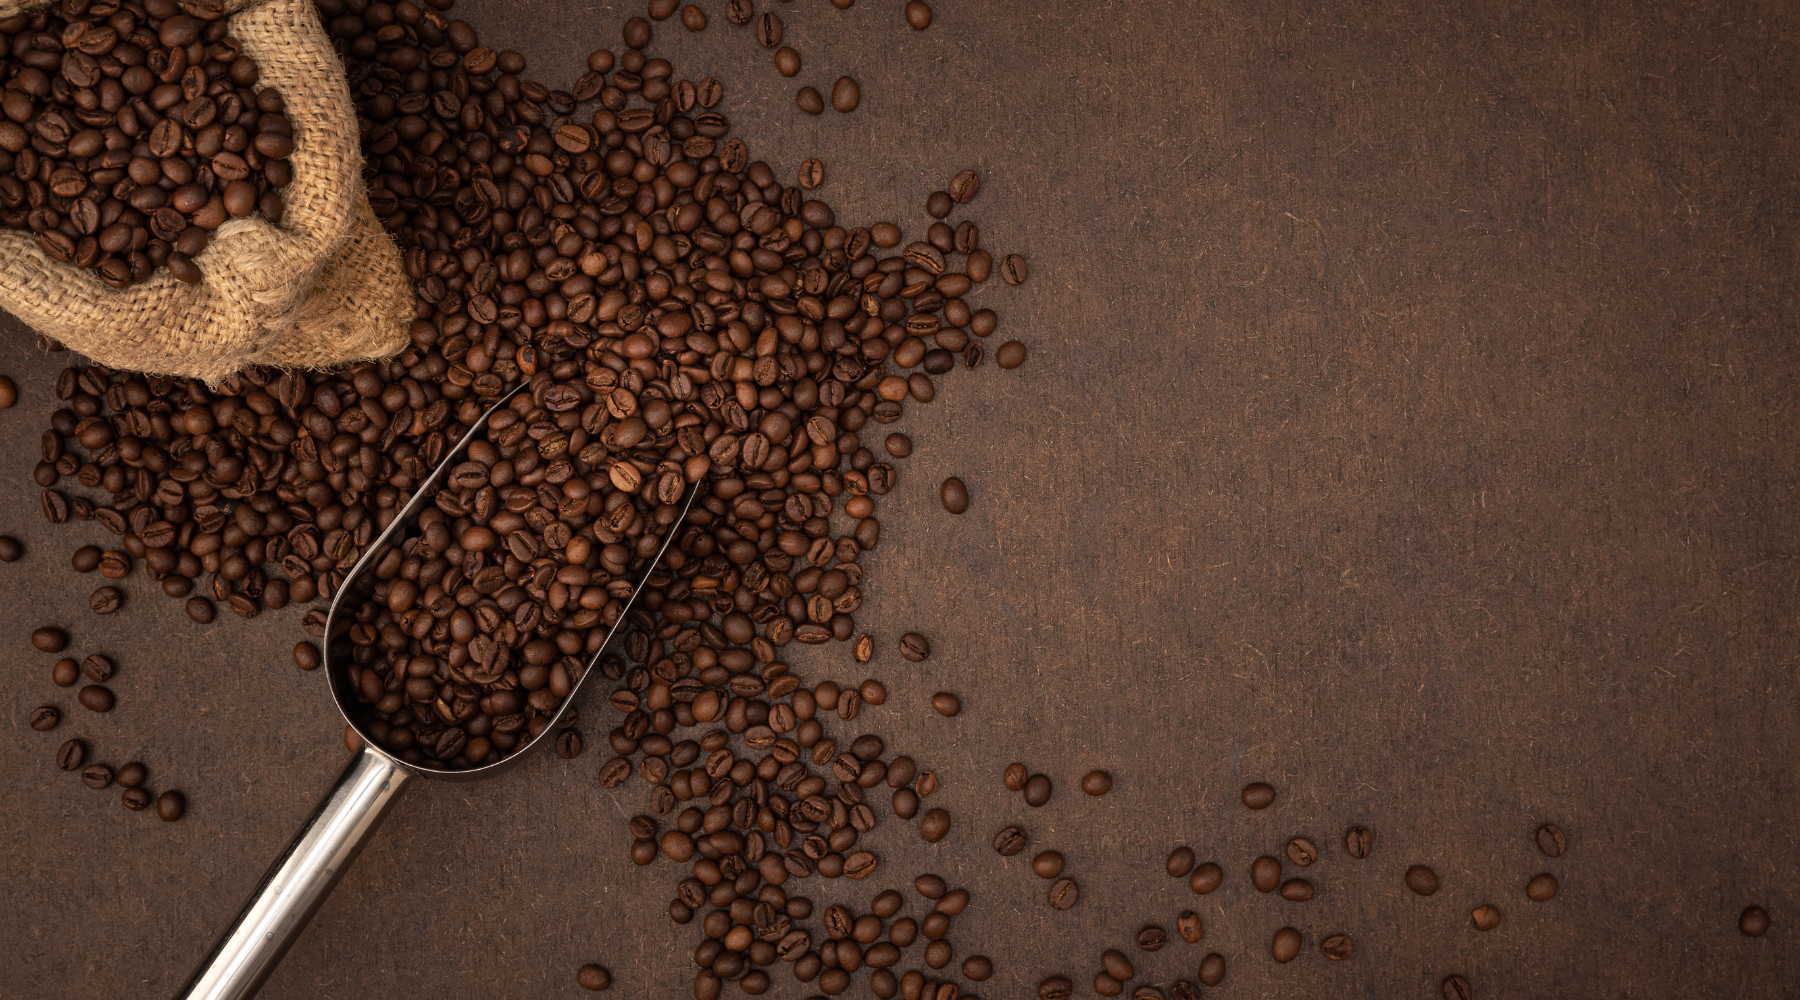 chicchi di caffè tostati per introdurre alla storia del caffè e le sue origini. dove è nato il caffè e come è arrivato in europa. Quando sono stati scoperti i benefici del caffè